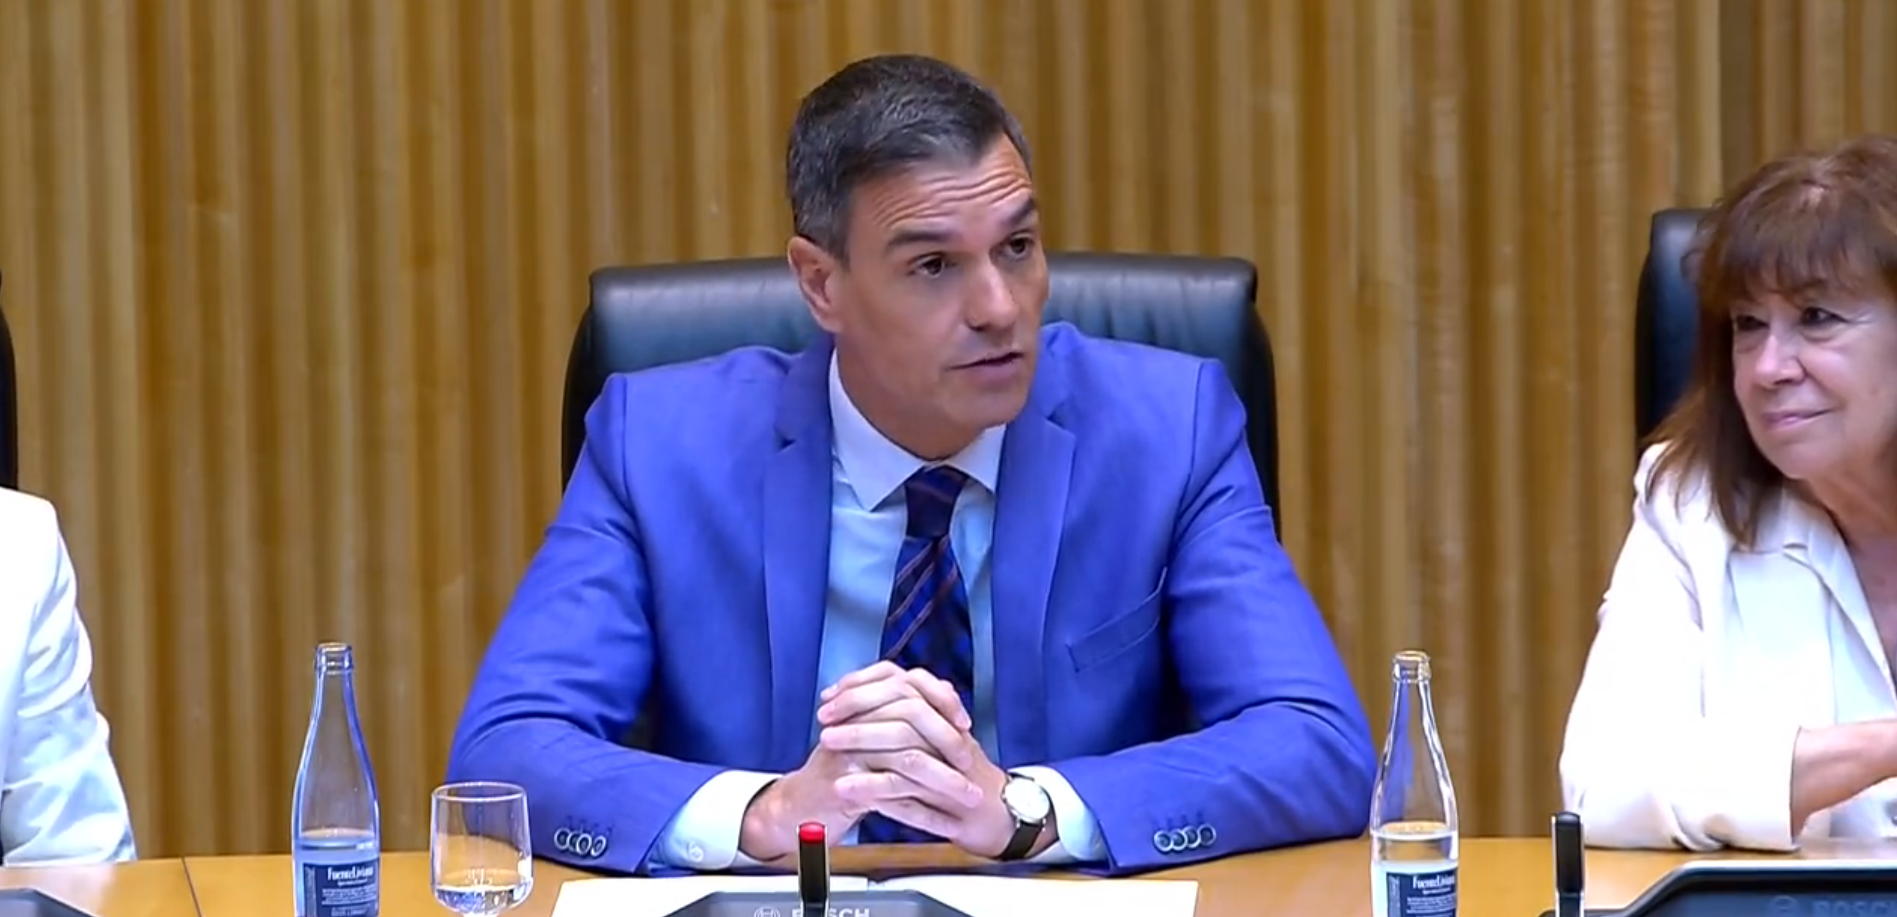 “Tomé la decisión con mi conciencia”: Así afirmó Pedro Sánchez tras decisión de adelantar elecciones (VIDEO)